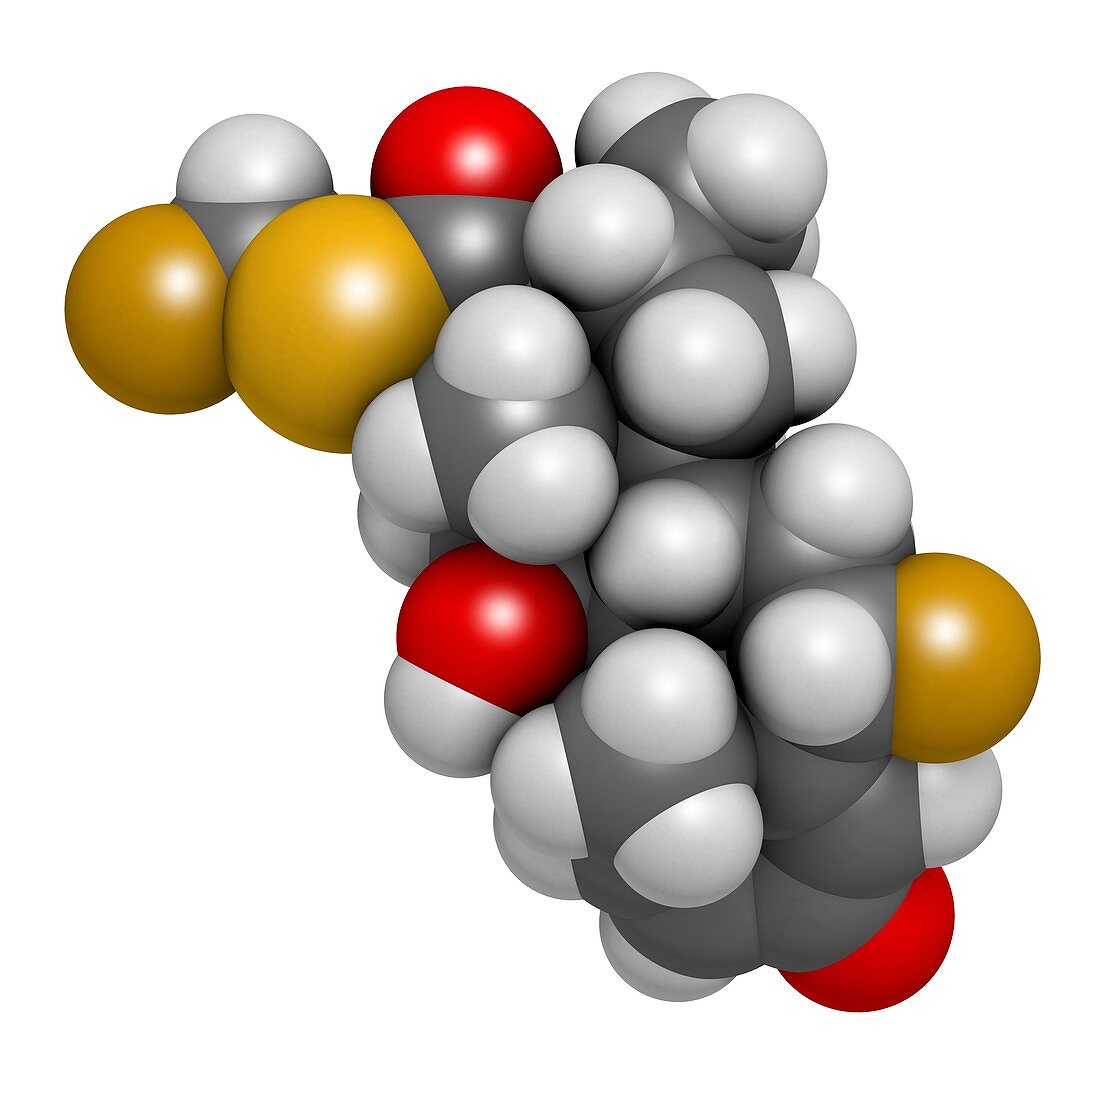 Fluticasone corticosteroid drug molecule